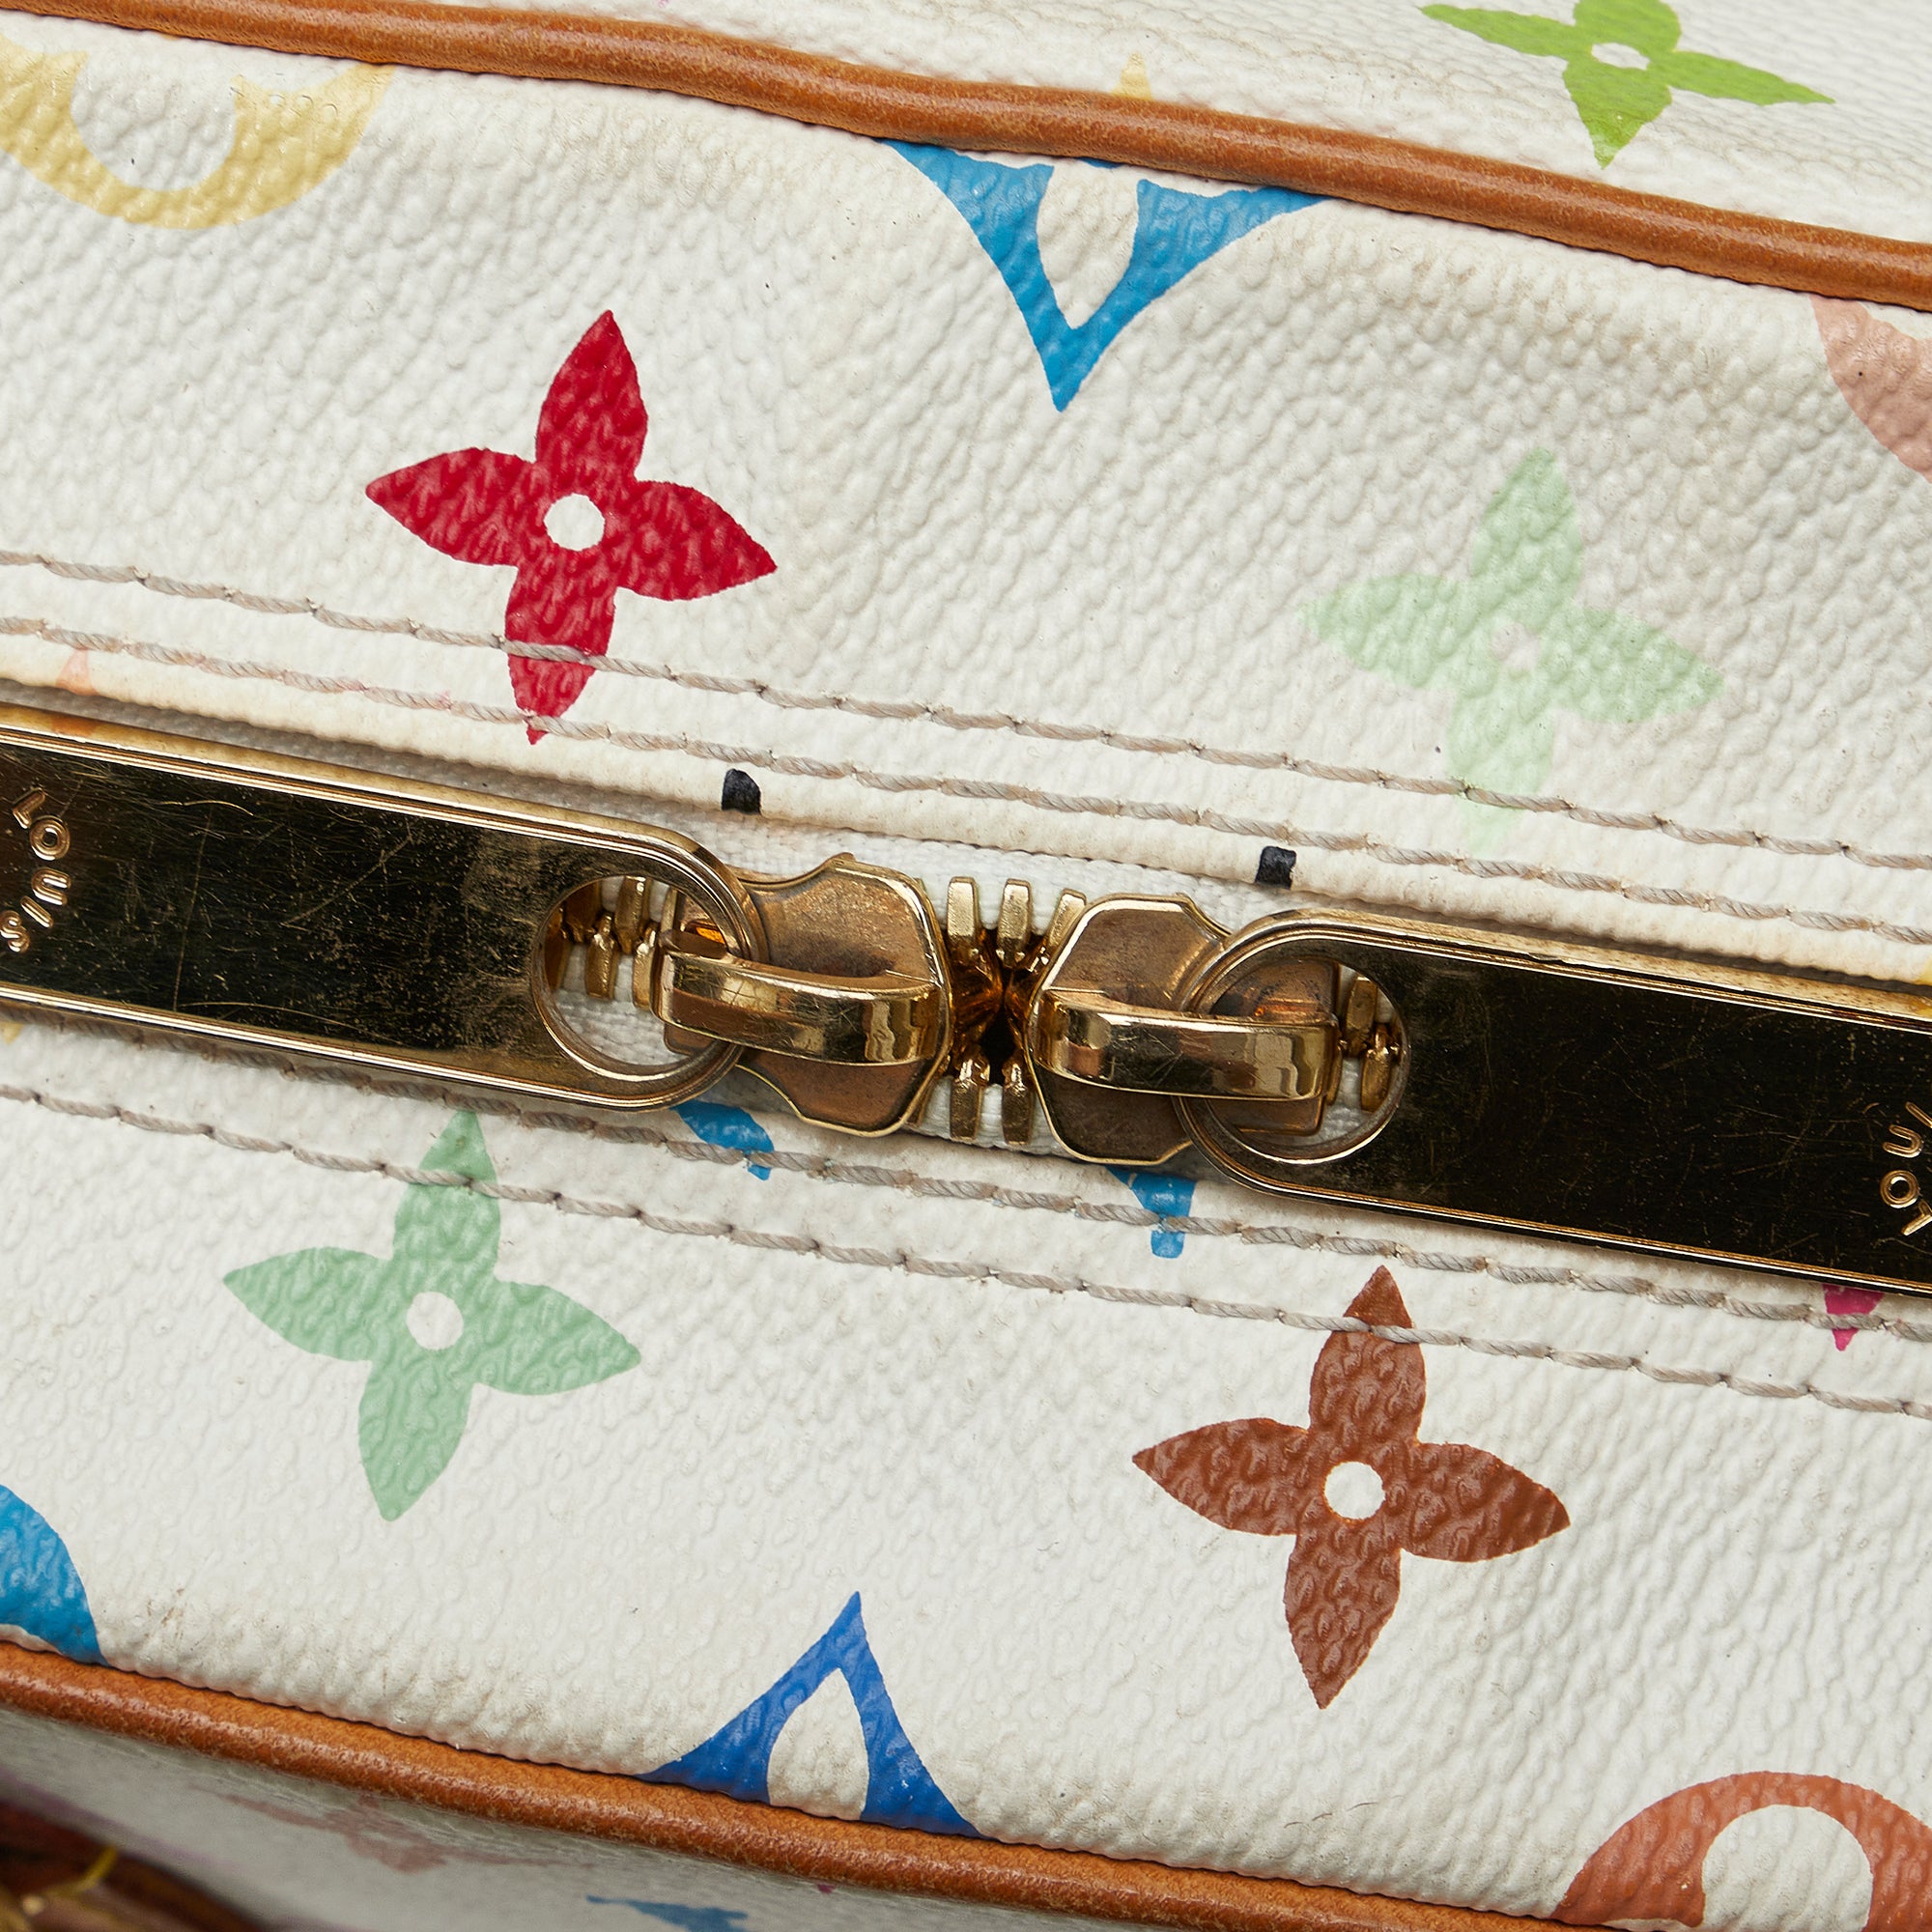 Louis Vuitton Trouville Handbag 280321